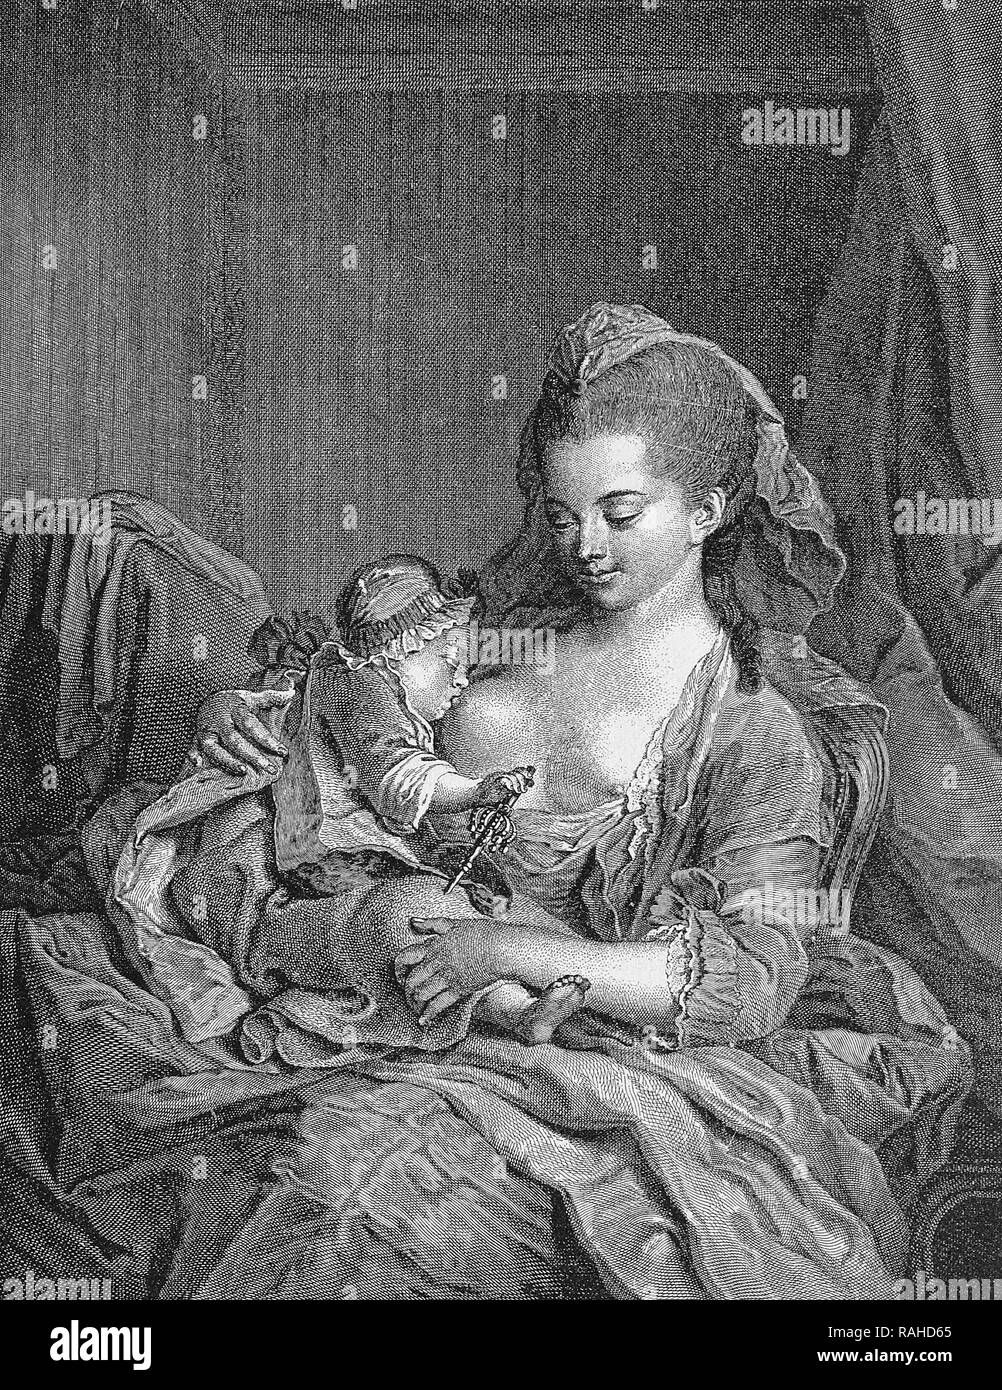 Gravure sur cuivre par Chavillet français d'après une peinture par Peters, images illustrant l'épouse du peintre, 1800 Banque D'Images